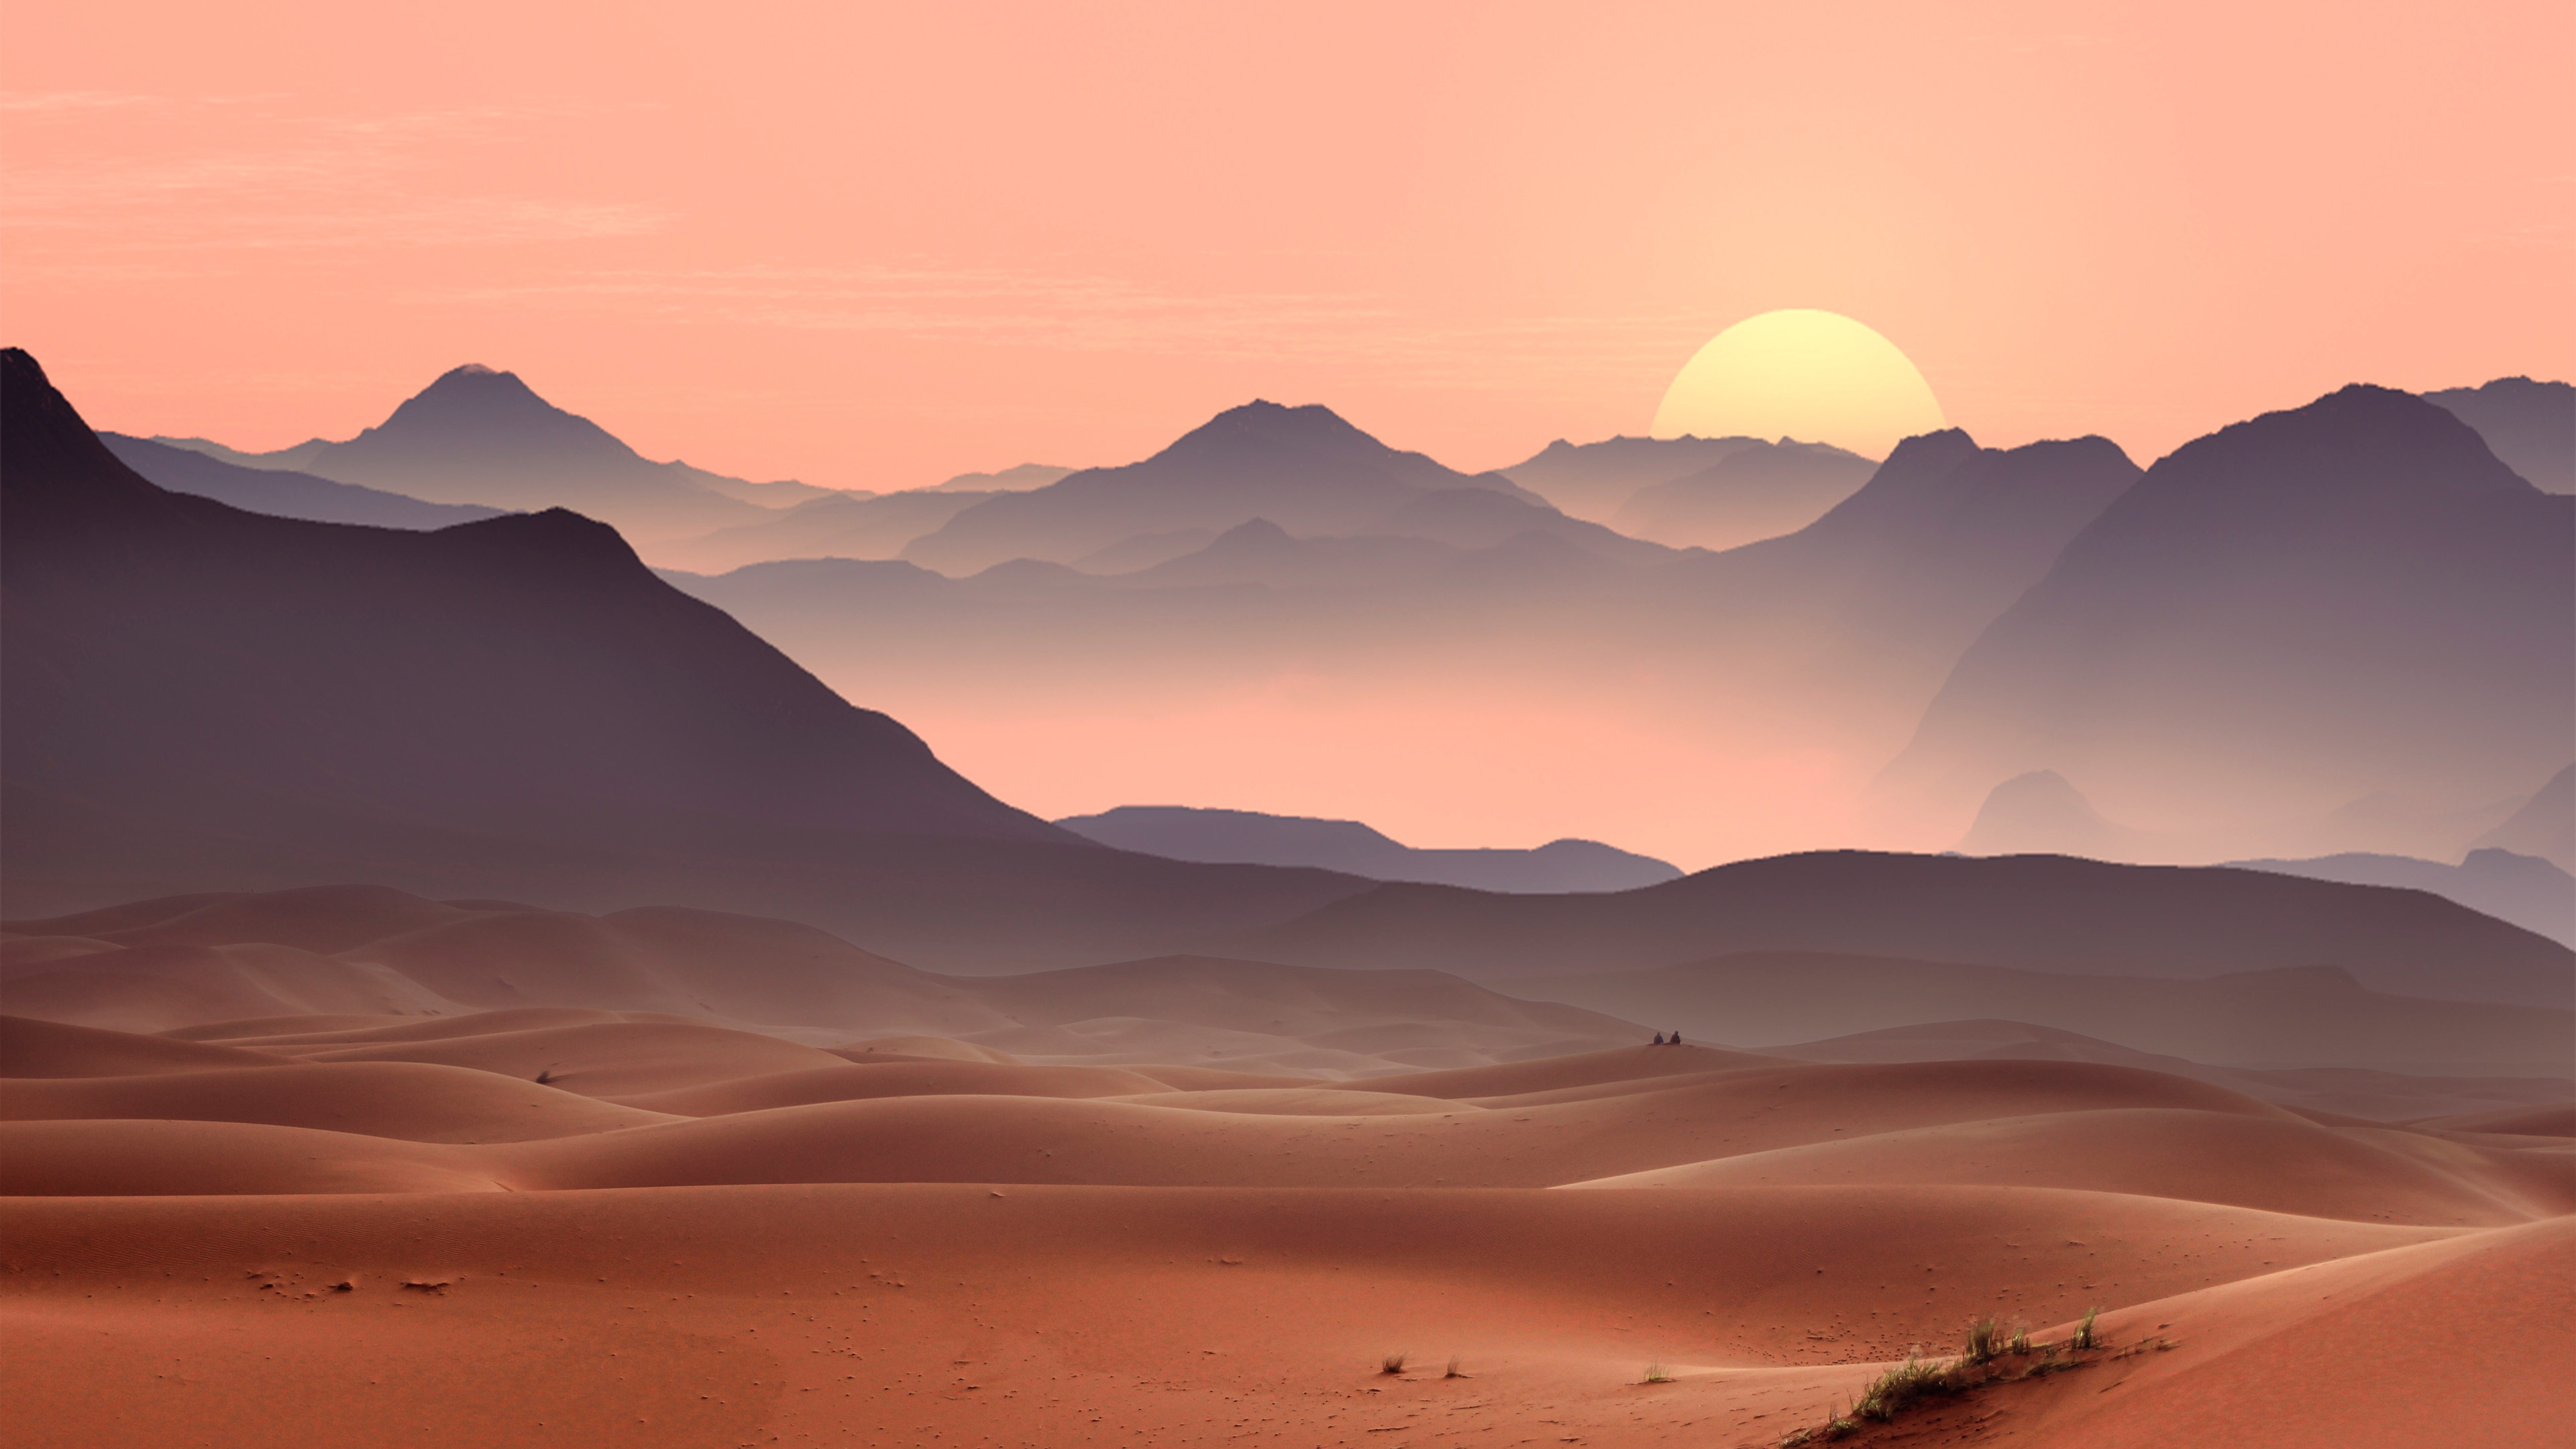 Download Wallpaper: Sunset On The Desert Dunes 3840X2160